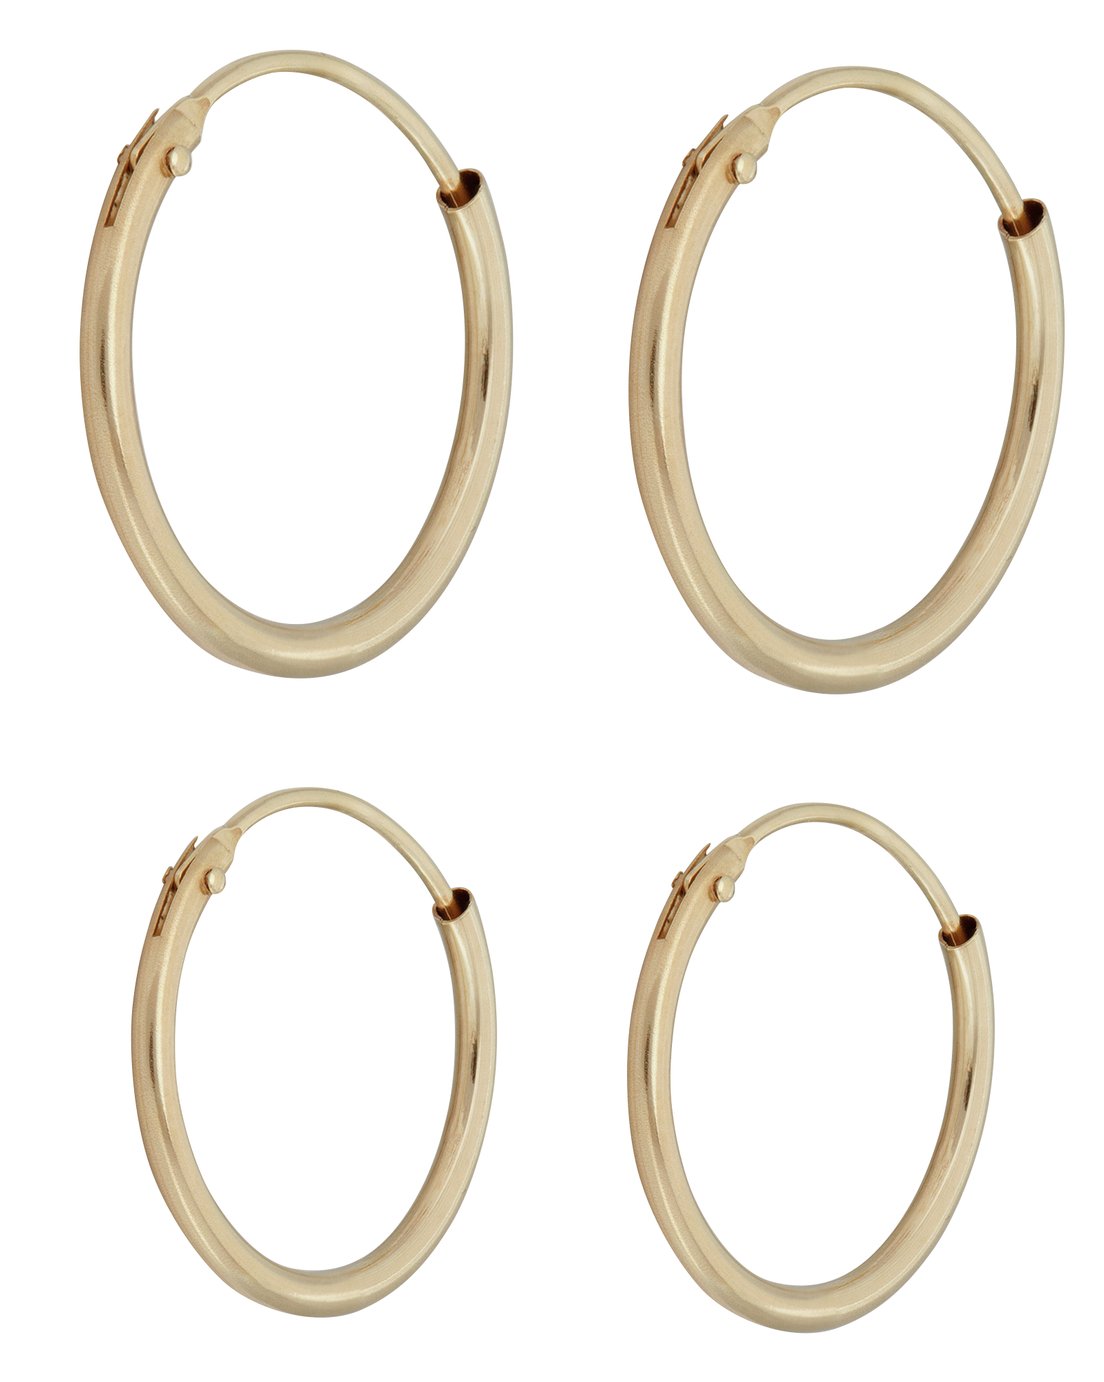 Revere 9ct Gold Hinged Hoop Earrings - Set of 2 Pairs